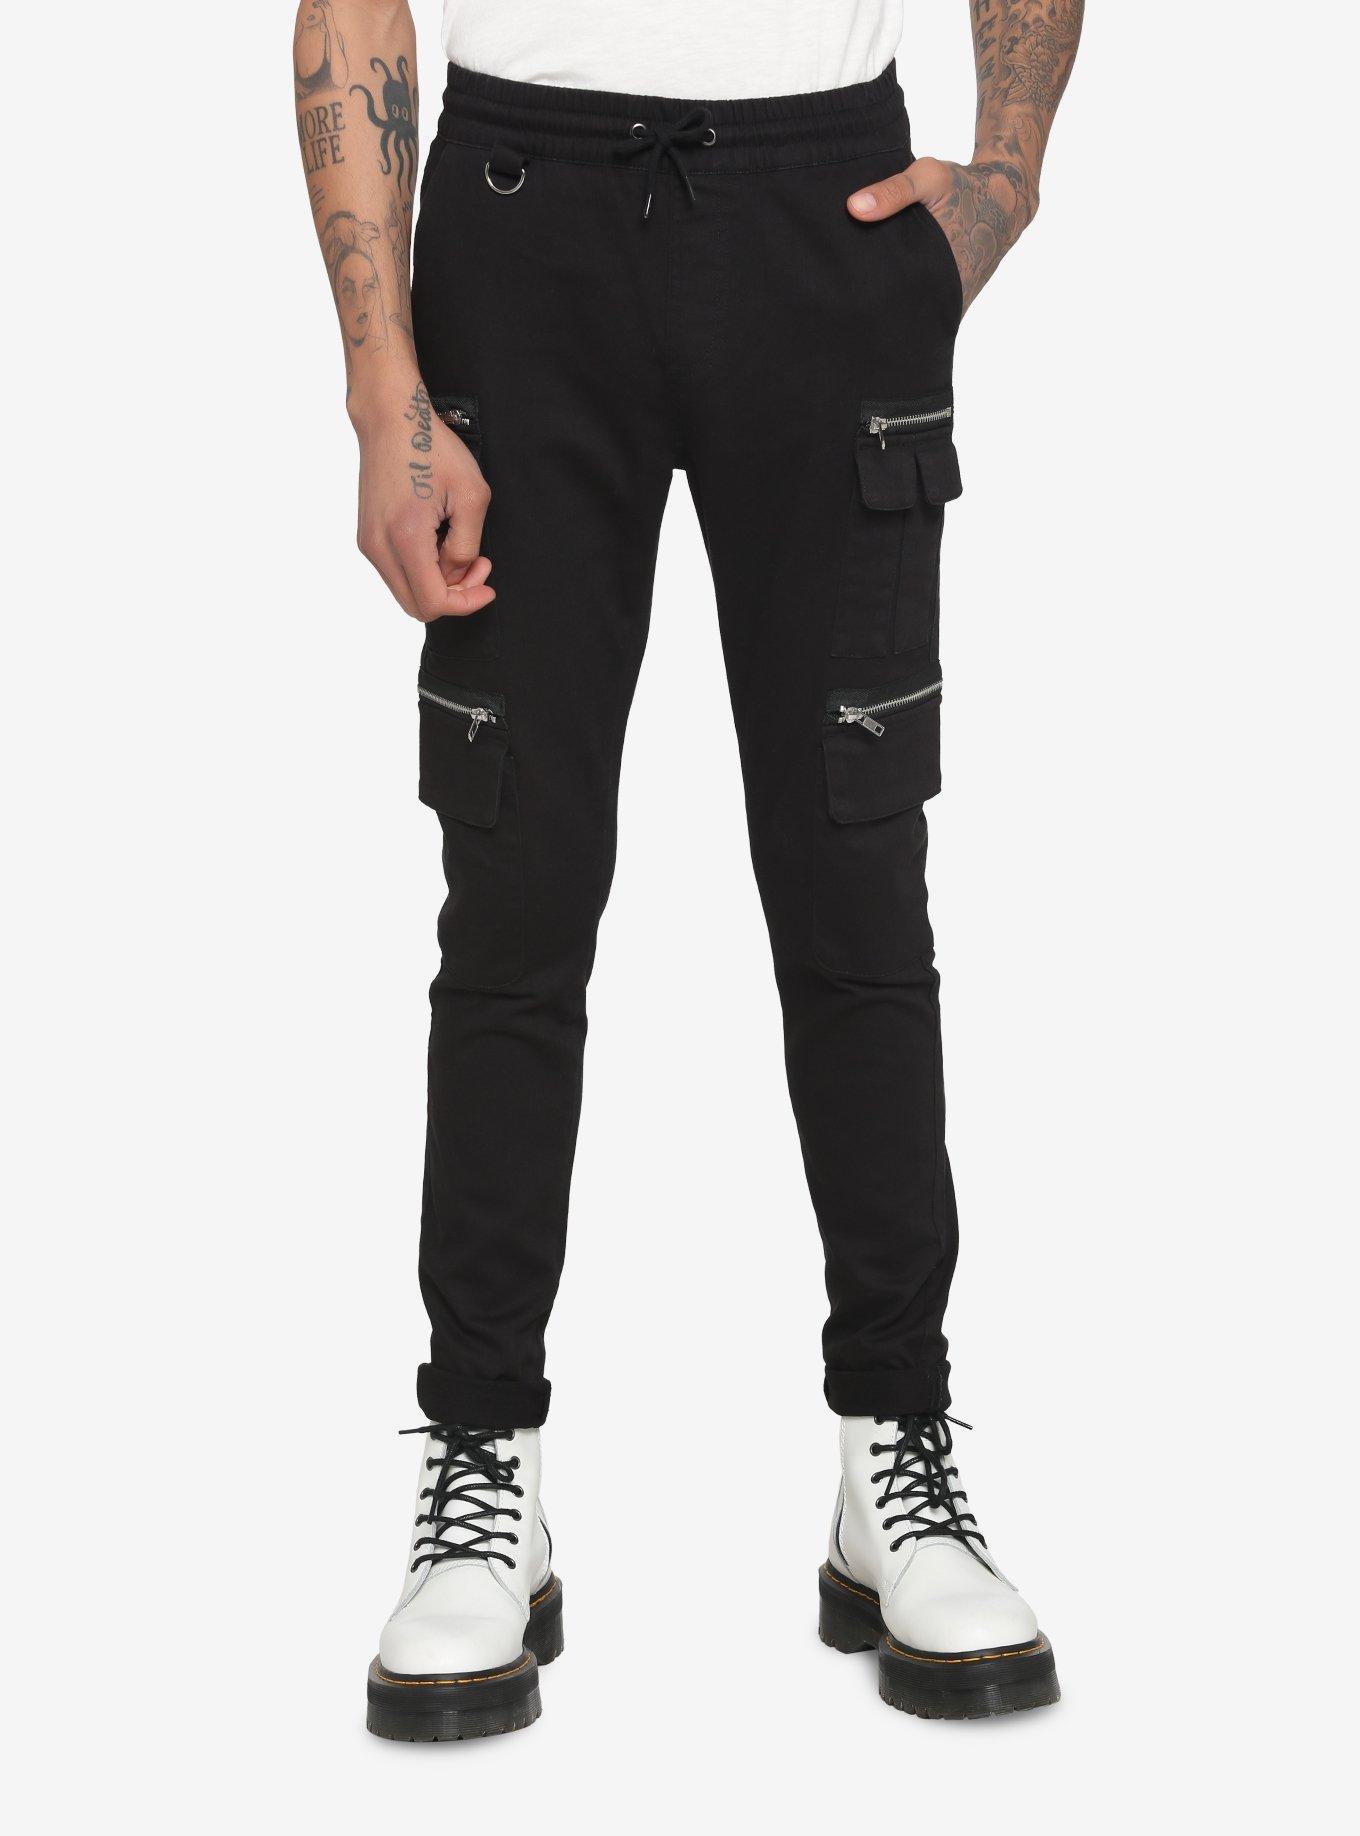 Black Zipper Jogger Pants, BLACK, hi-res